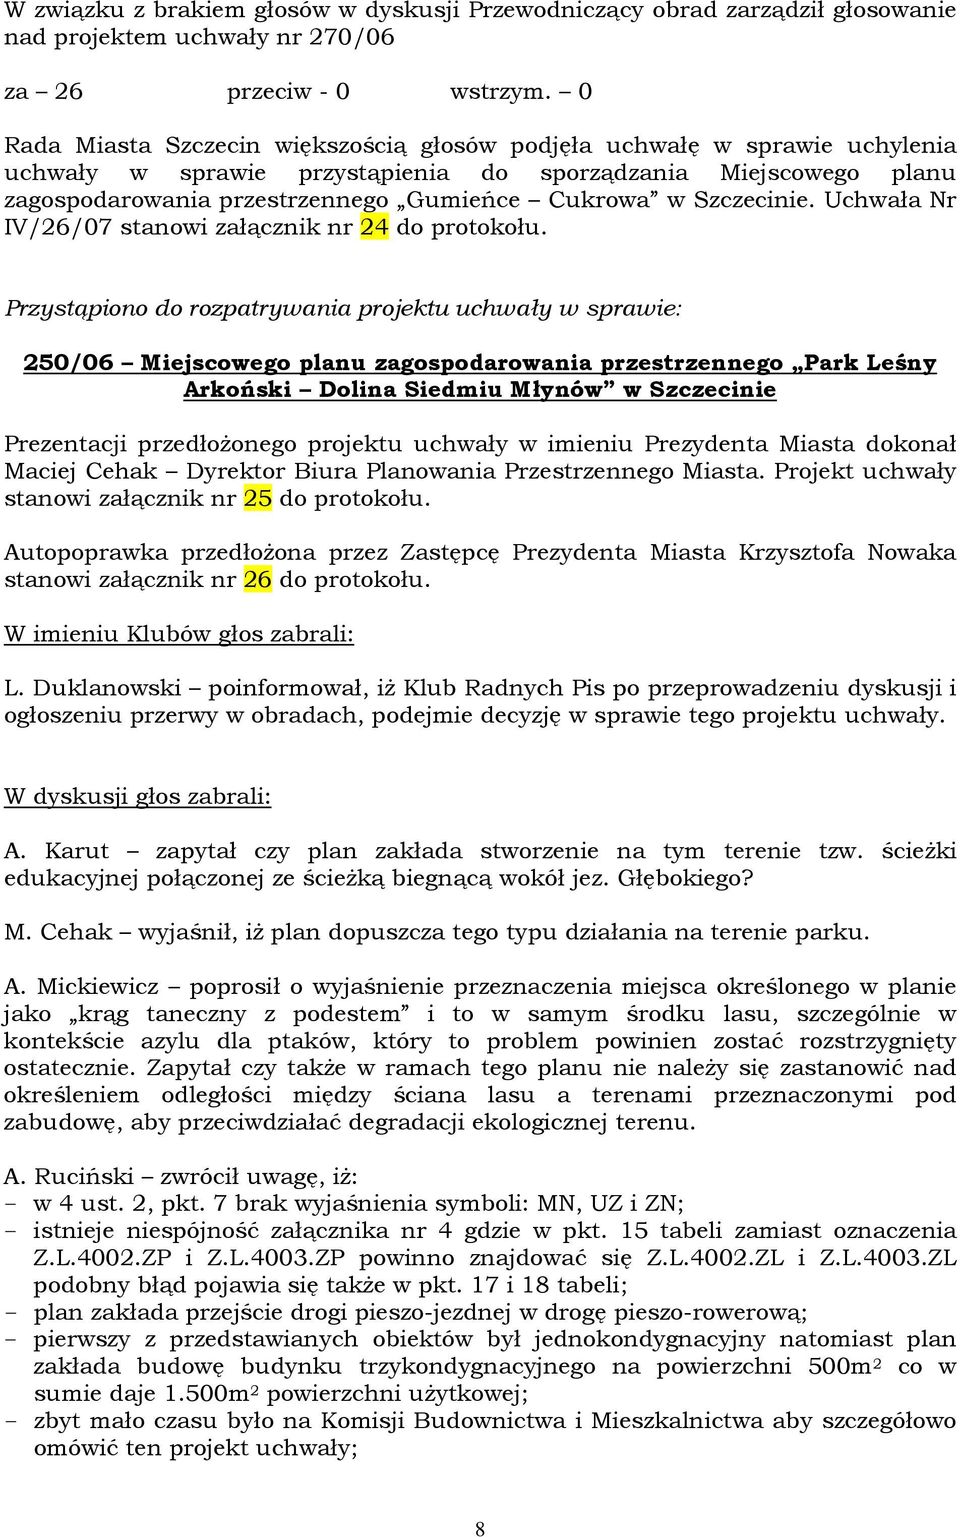 Szczecinie. Uchwała Nr IV/26/07 stanowi załącznik nr 24 do protokołu.